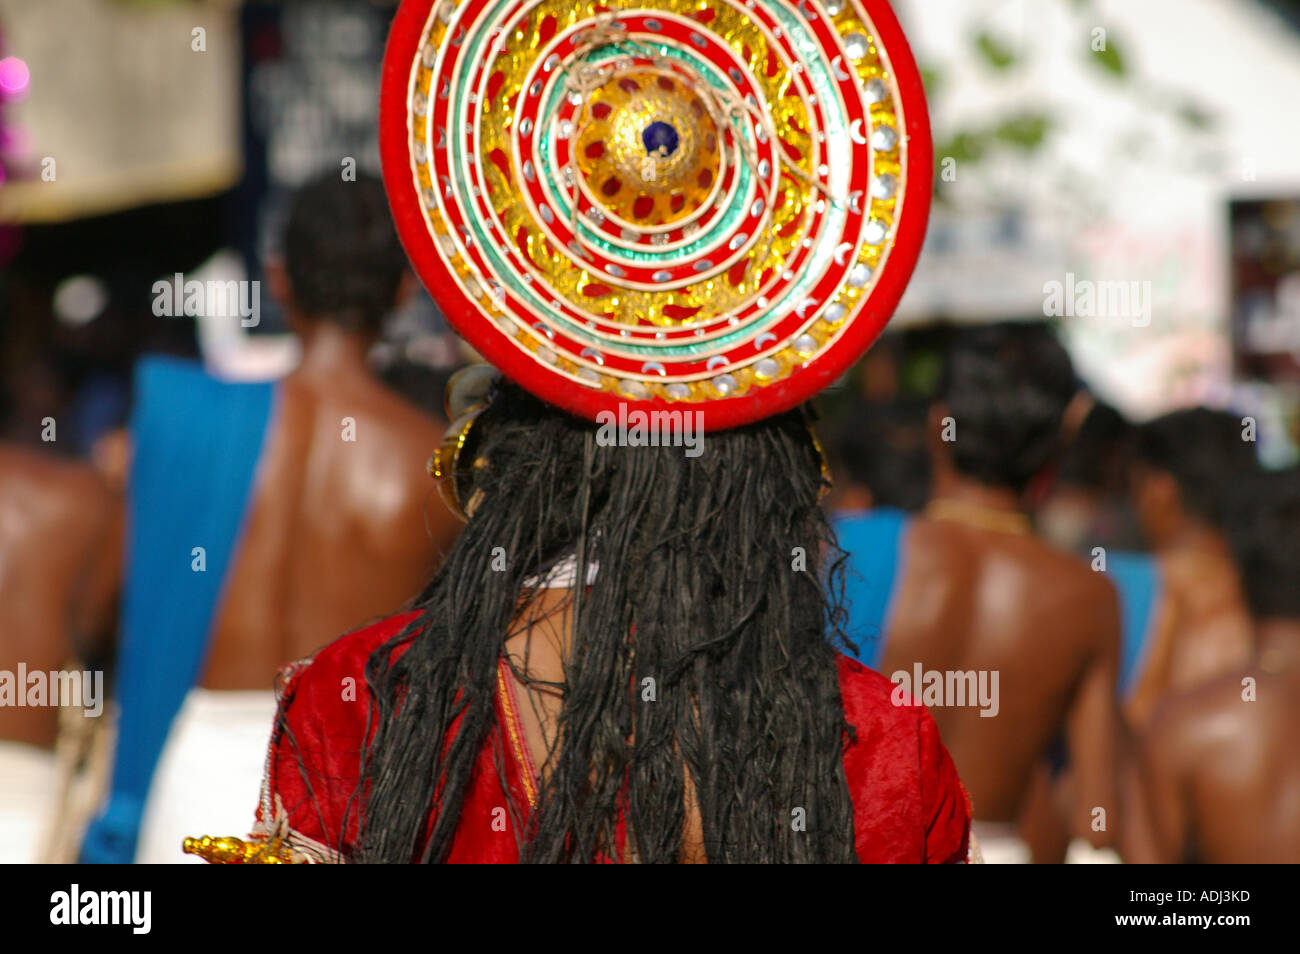 Trivandrum Thiruvananthapuram Kerala Patterned hat dancer Stock Photo